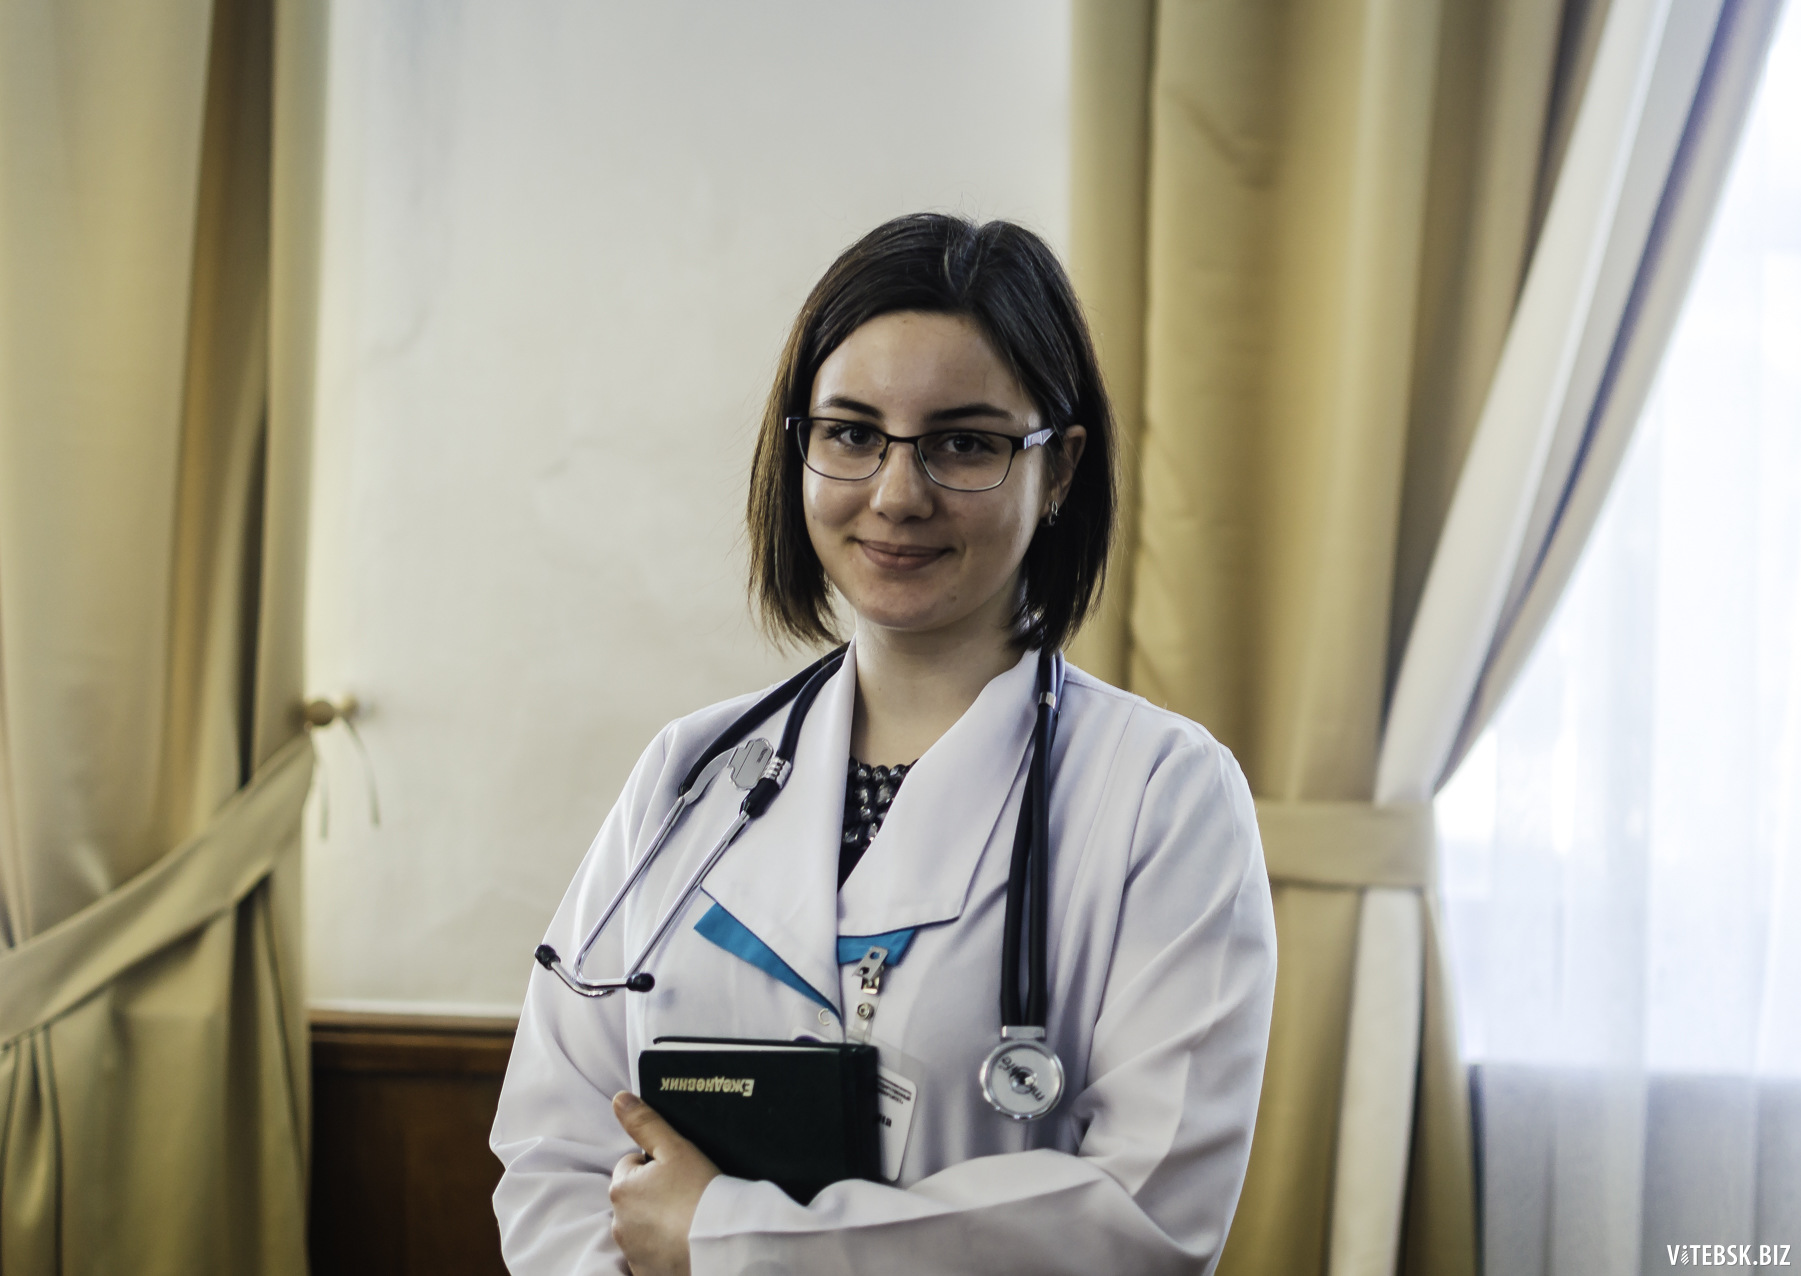 Карина Волчик, студентка ВГМУ и волонтёр медико-социального проекта «Санаторий на дому». Девушка помогает с реабилитацией людям, которые перенесли инфаркт и инсульт